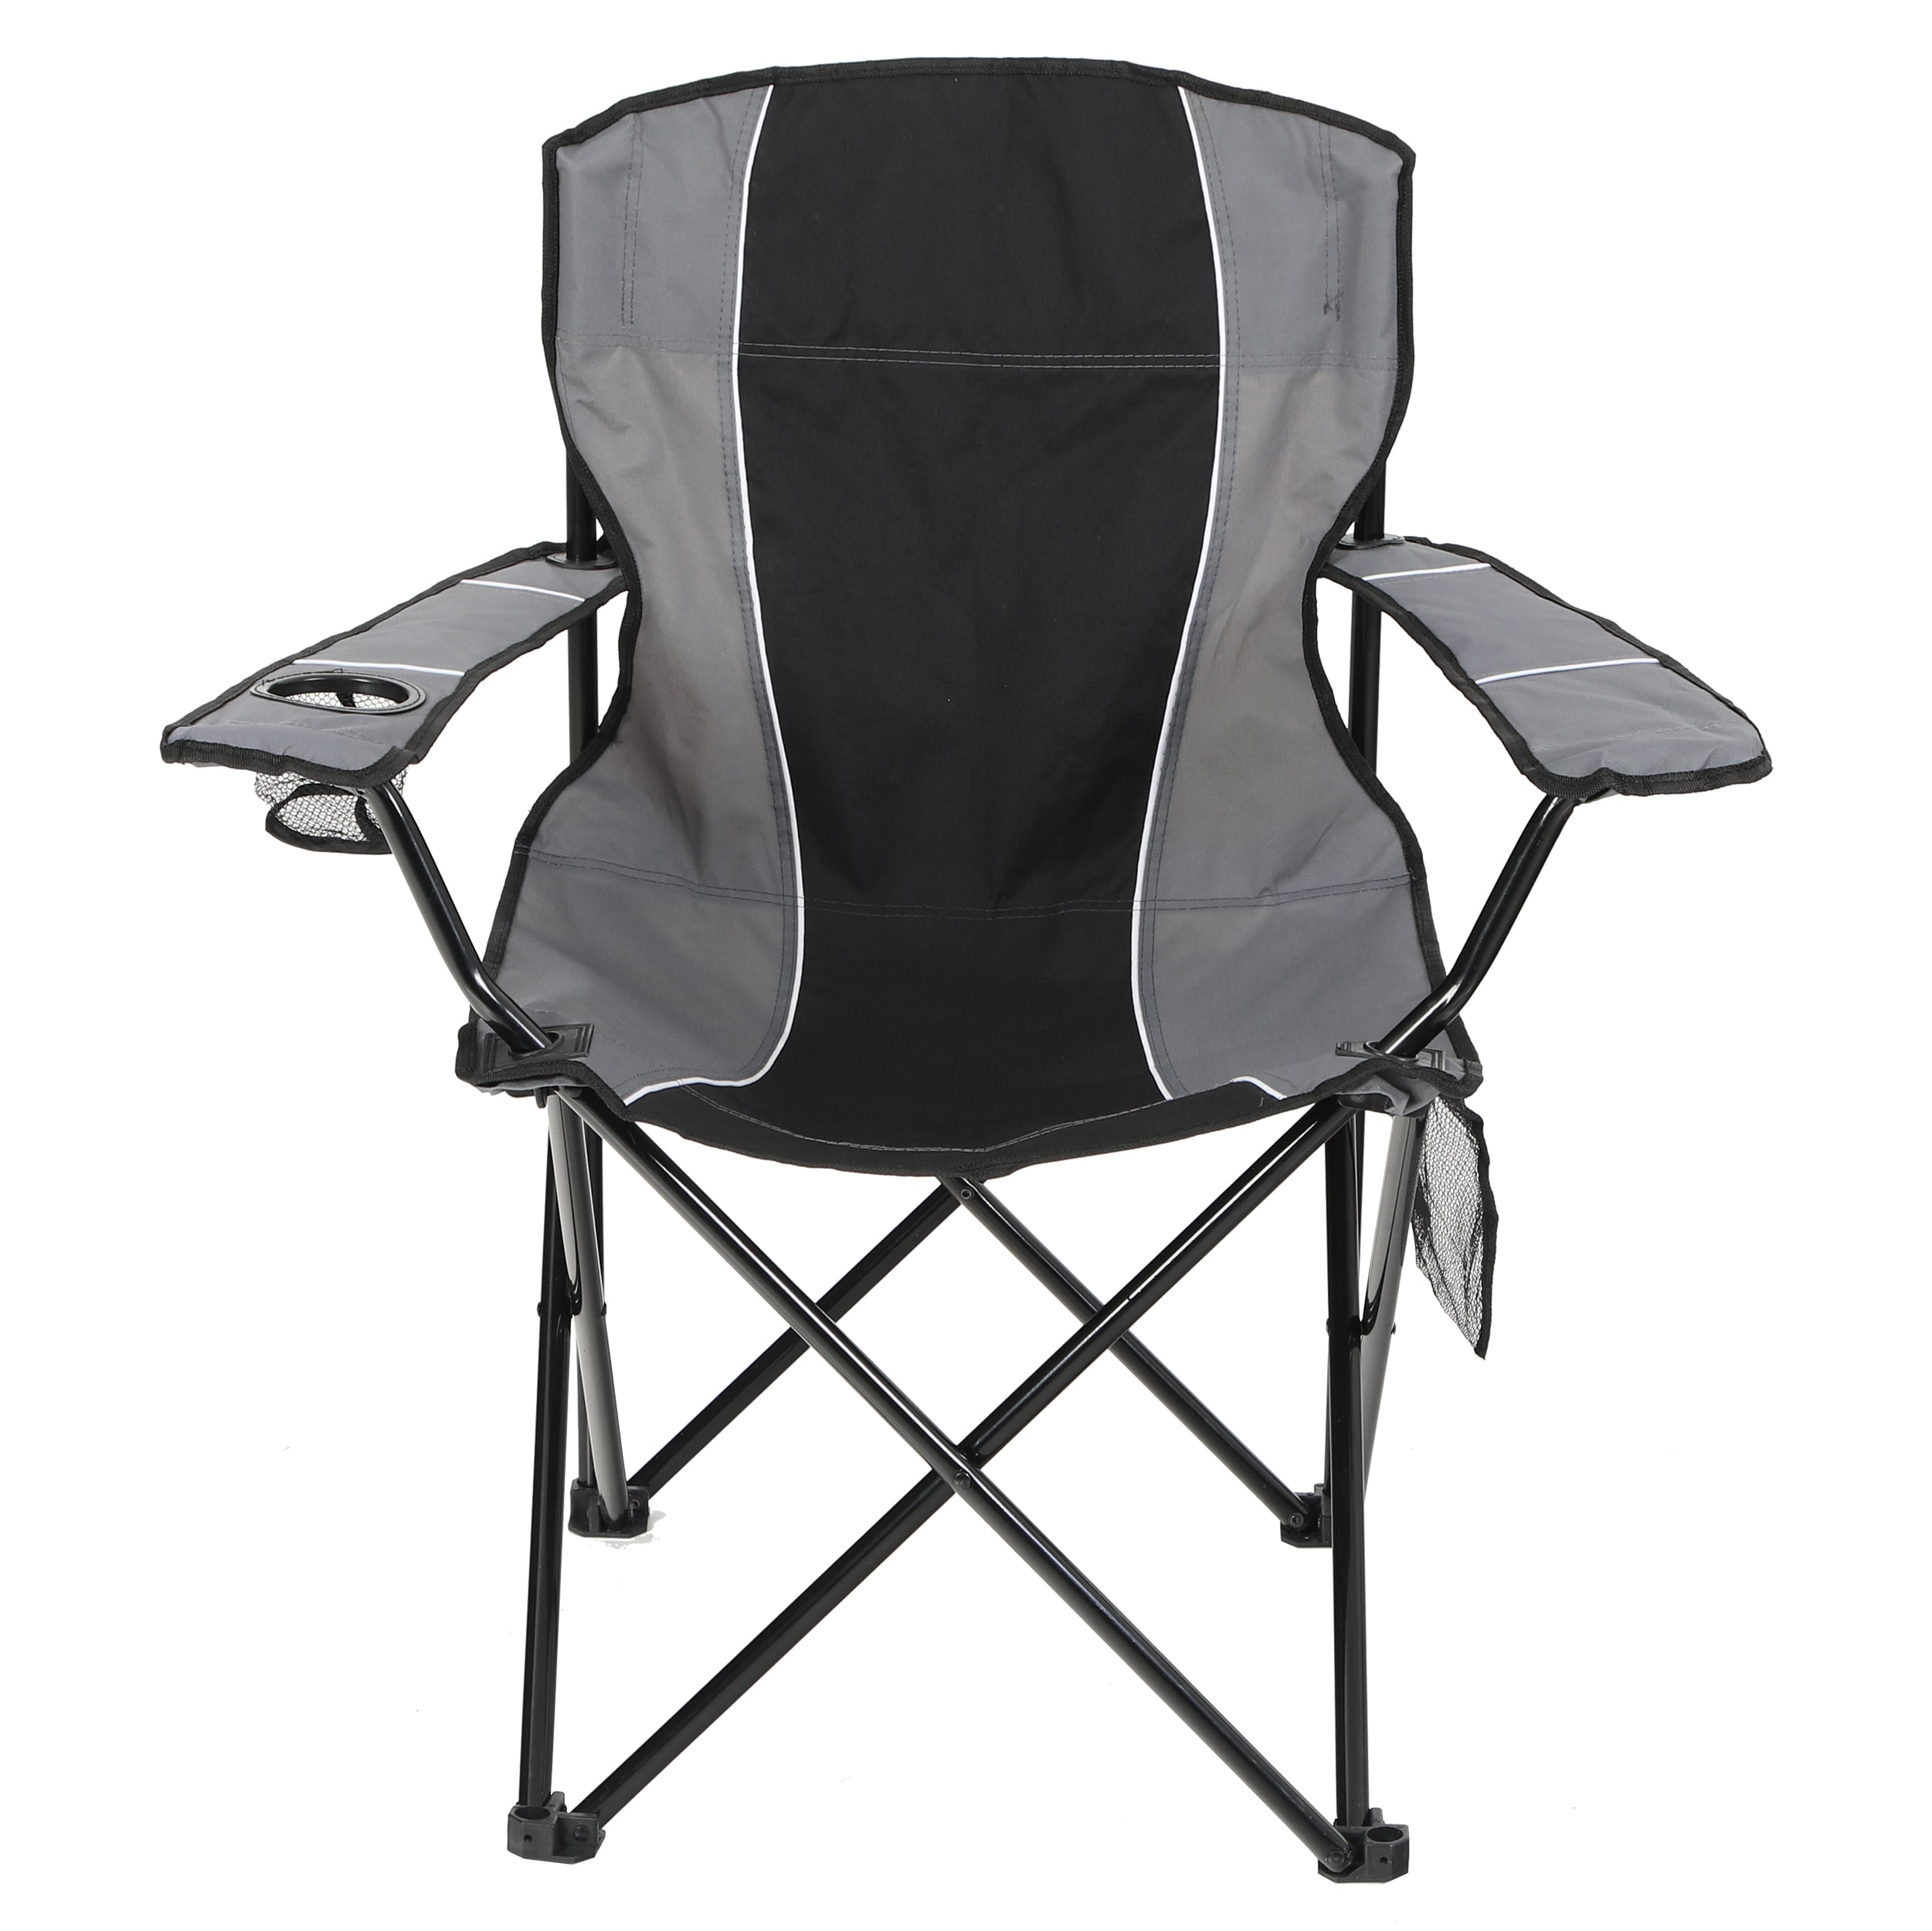 Garden Treasures Black & Grey Folding Camping Chair - Each